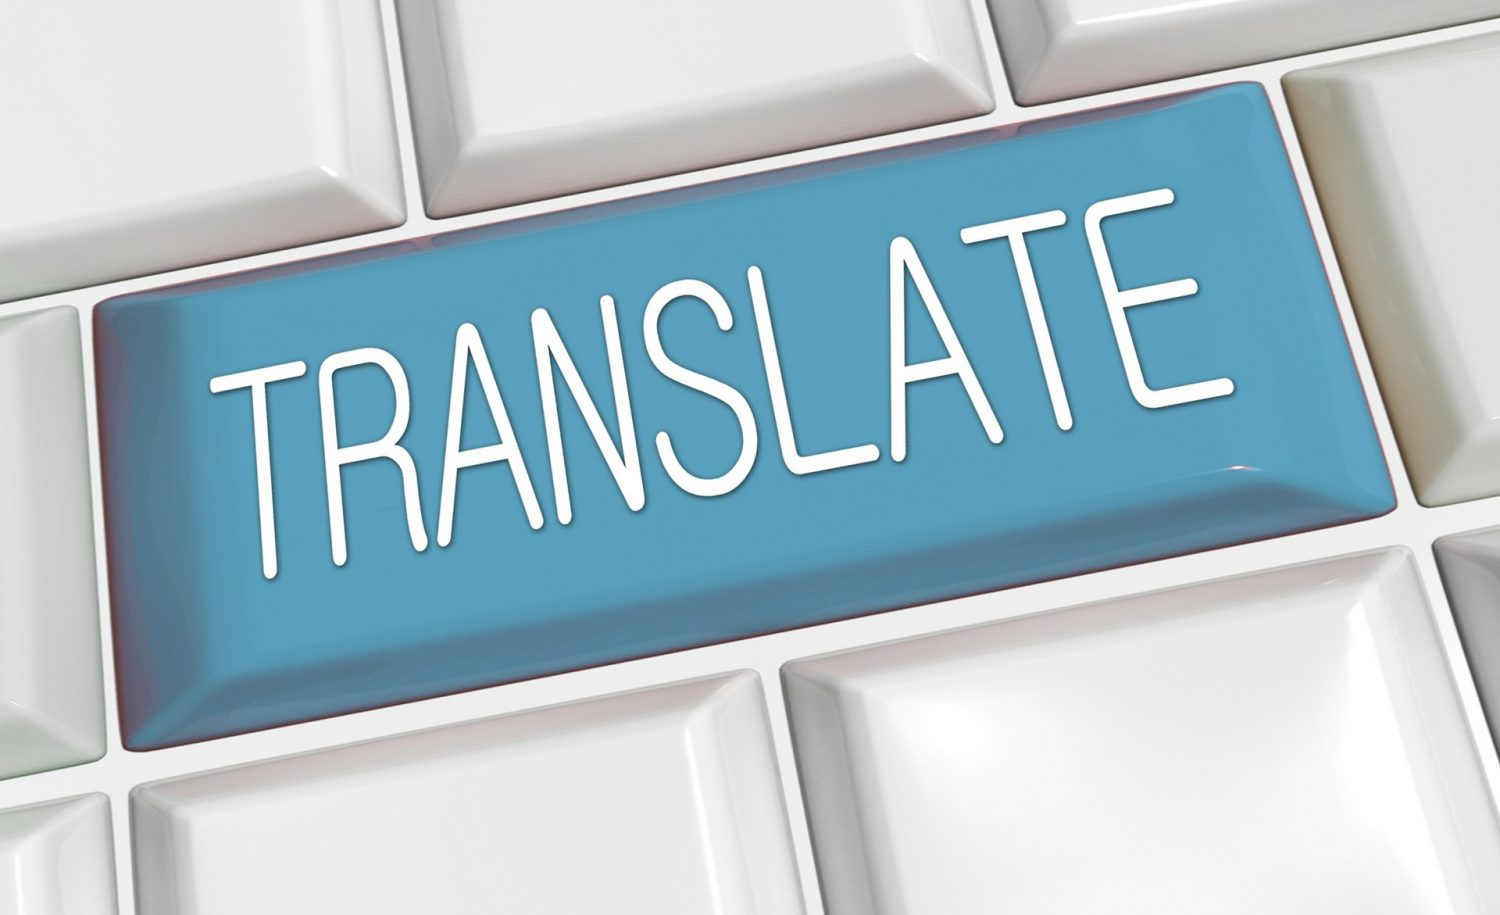 Różne rodzaje przekładów wykonywane przez biuro tłumaczeń w Poznaniu